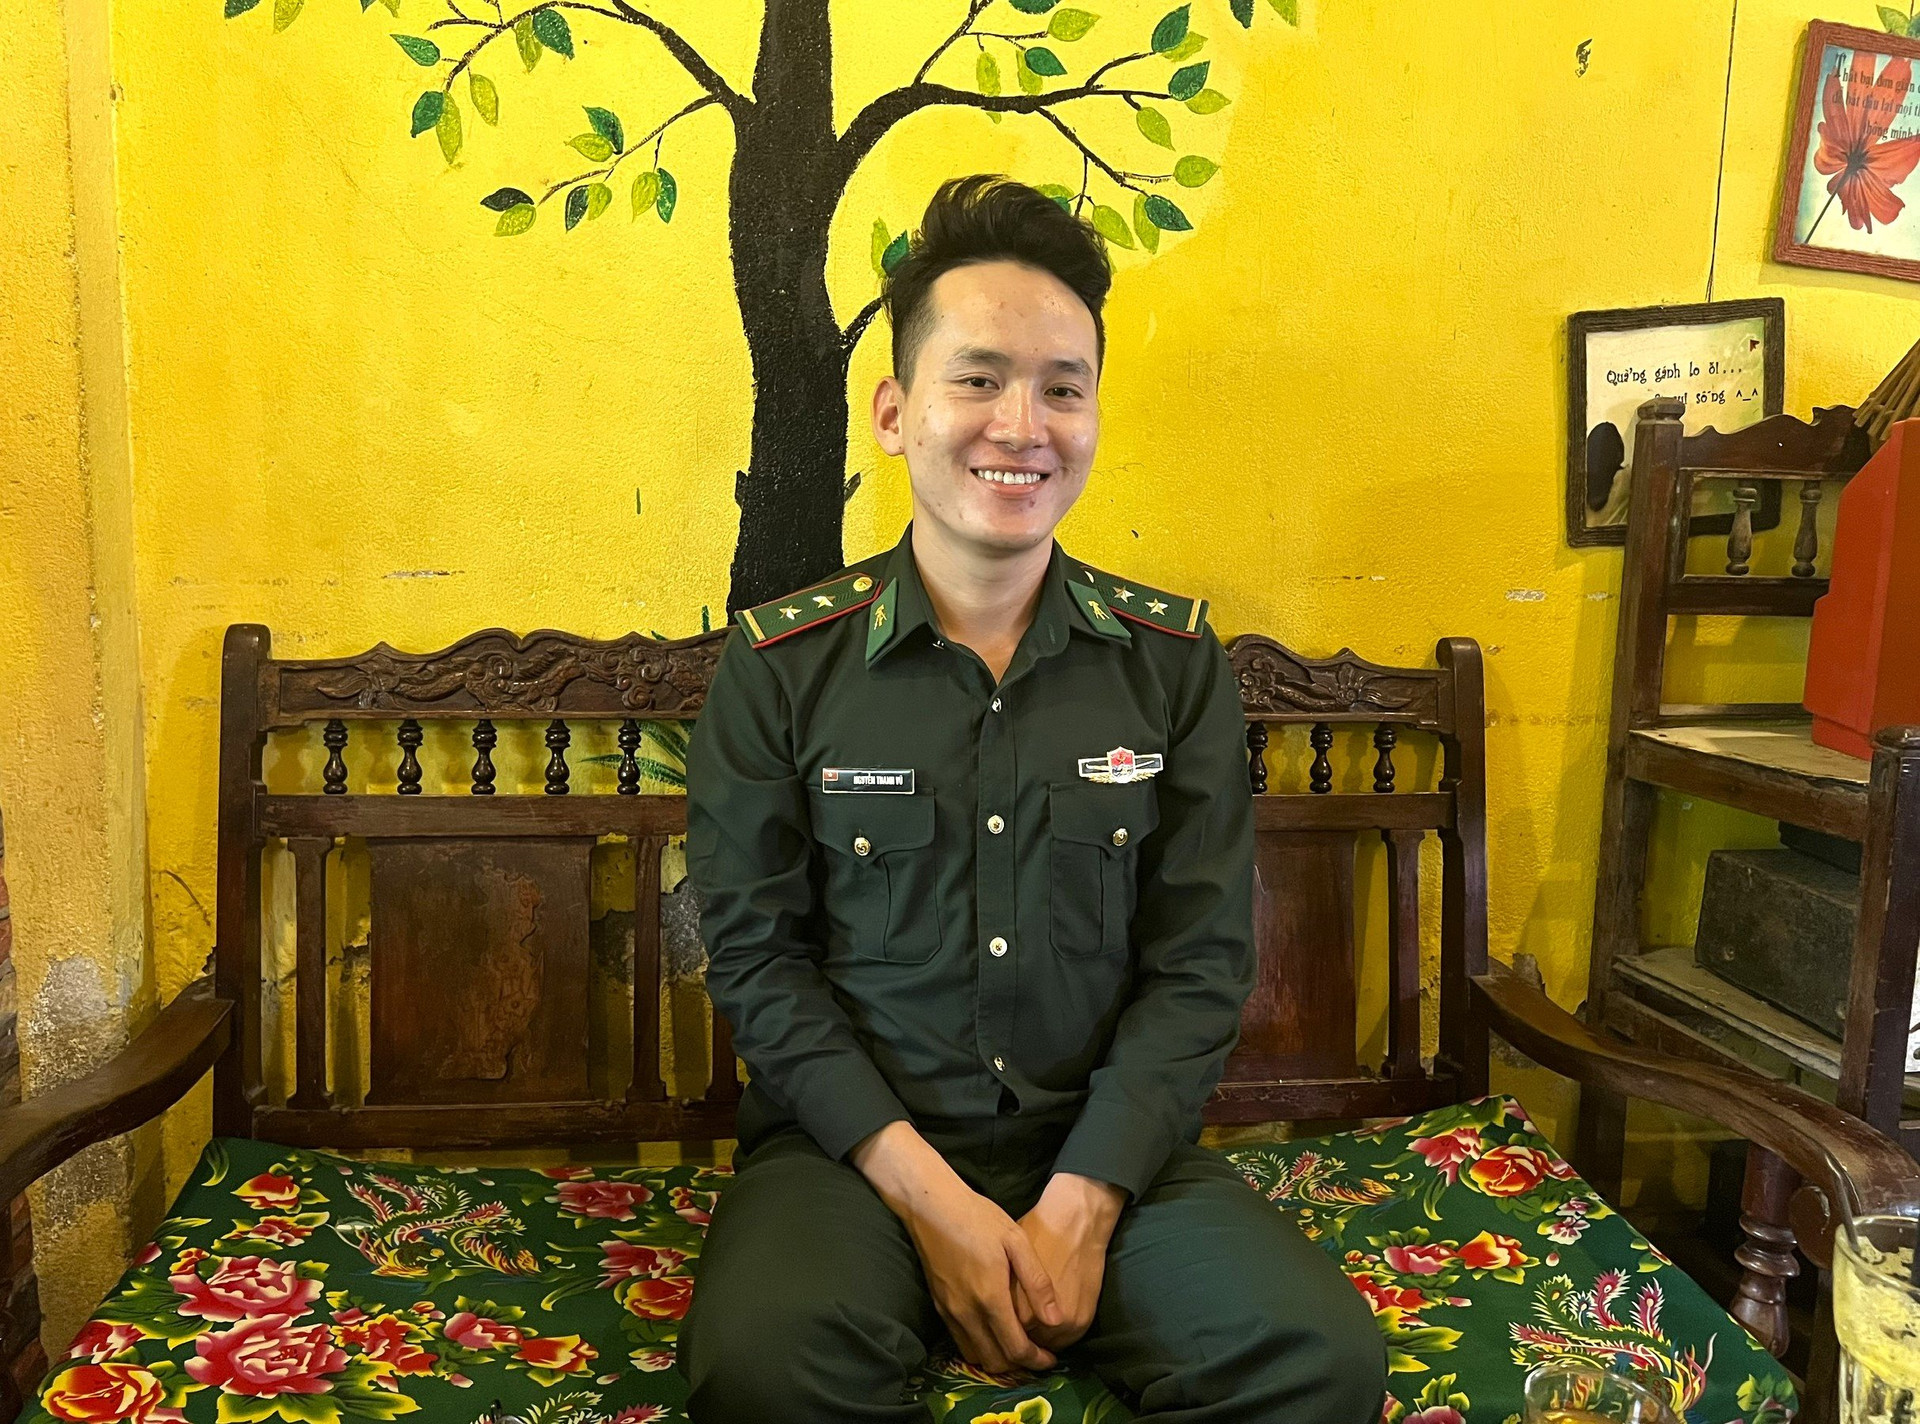 Niềm vui của Trung úy Nguyễn Thanh Vũ khi được chọn tham gia nhiệm vụ gìn giữ hòa bình Liên hiệp quốc. Ảnh: Đ.N